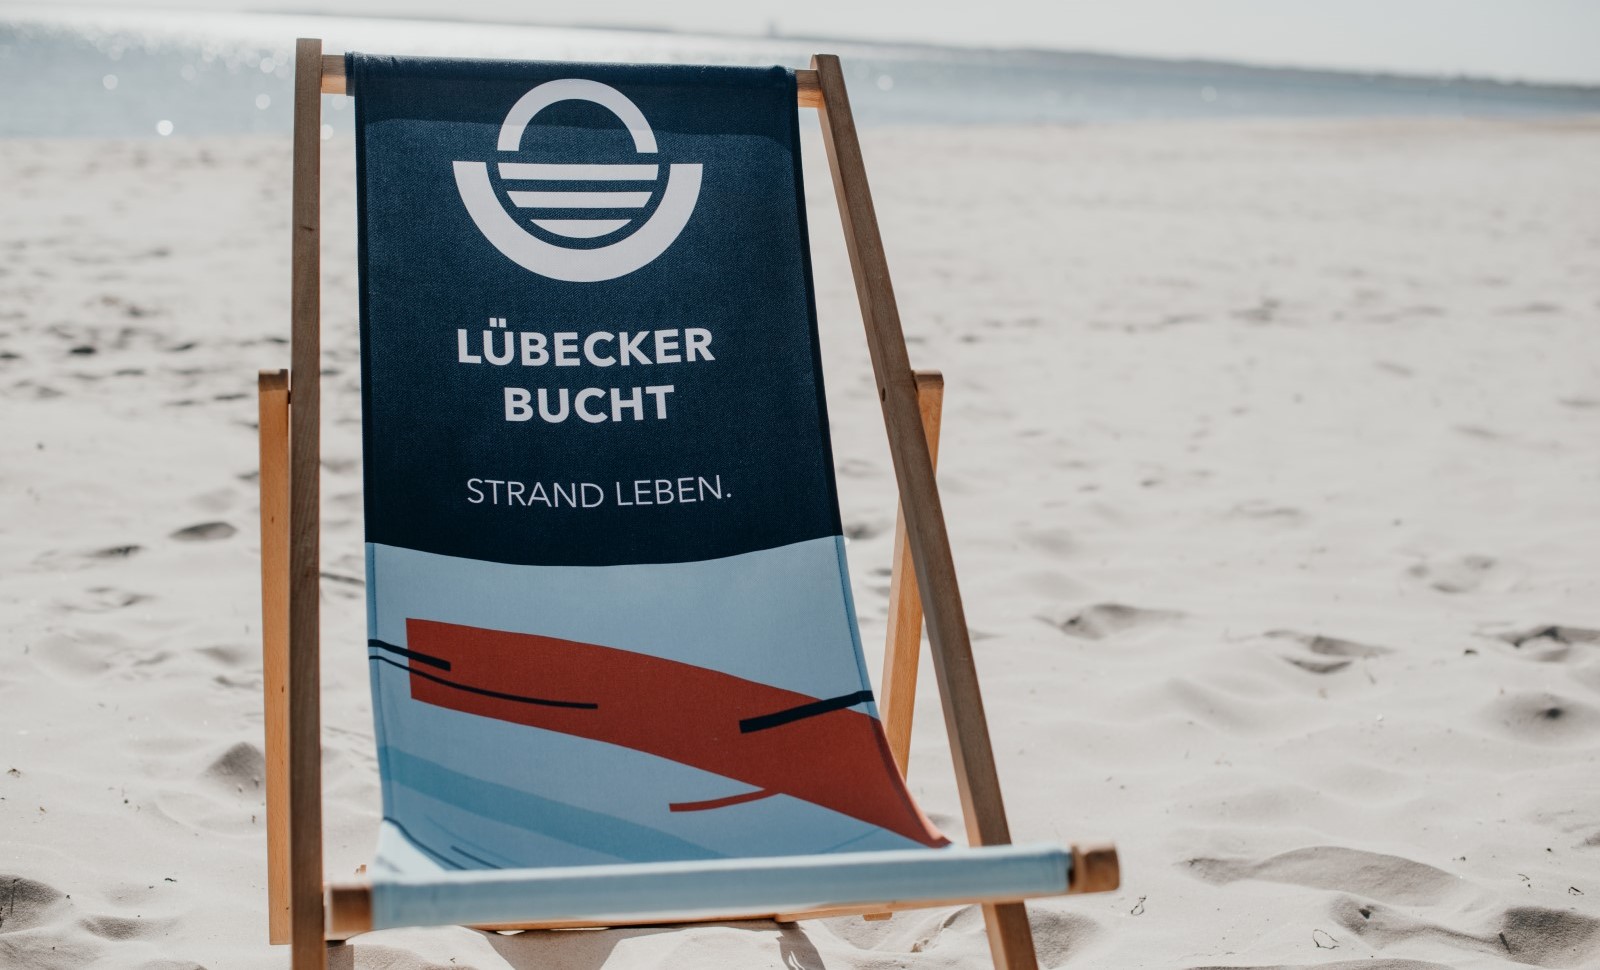 Tourismusagentur Lübecker Bucht